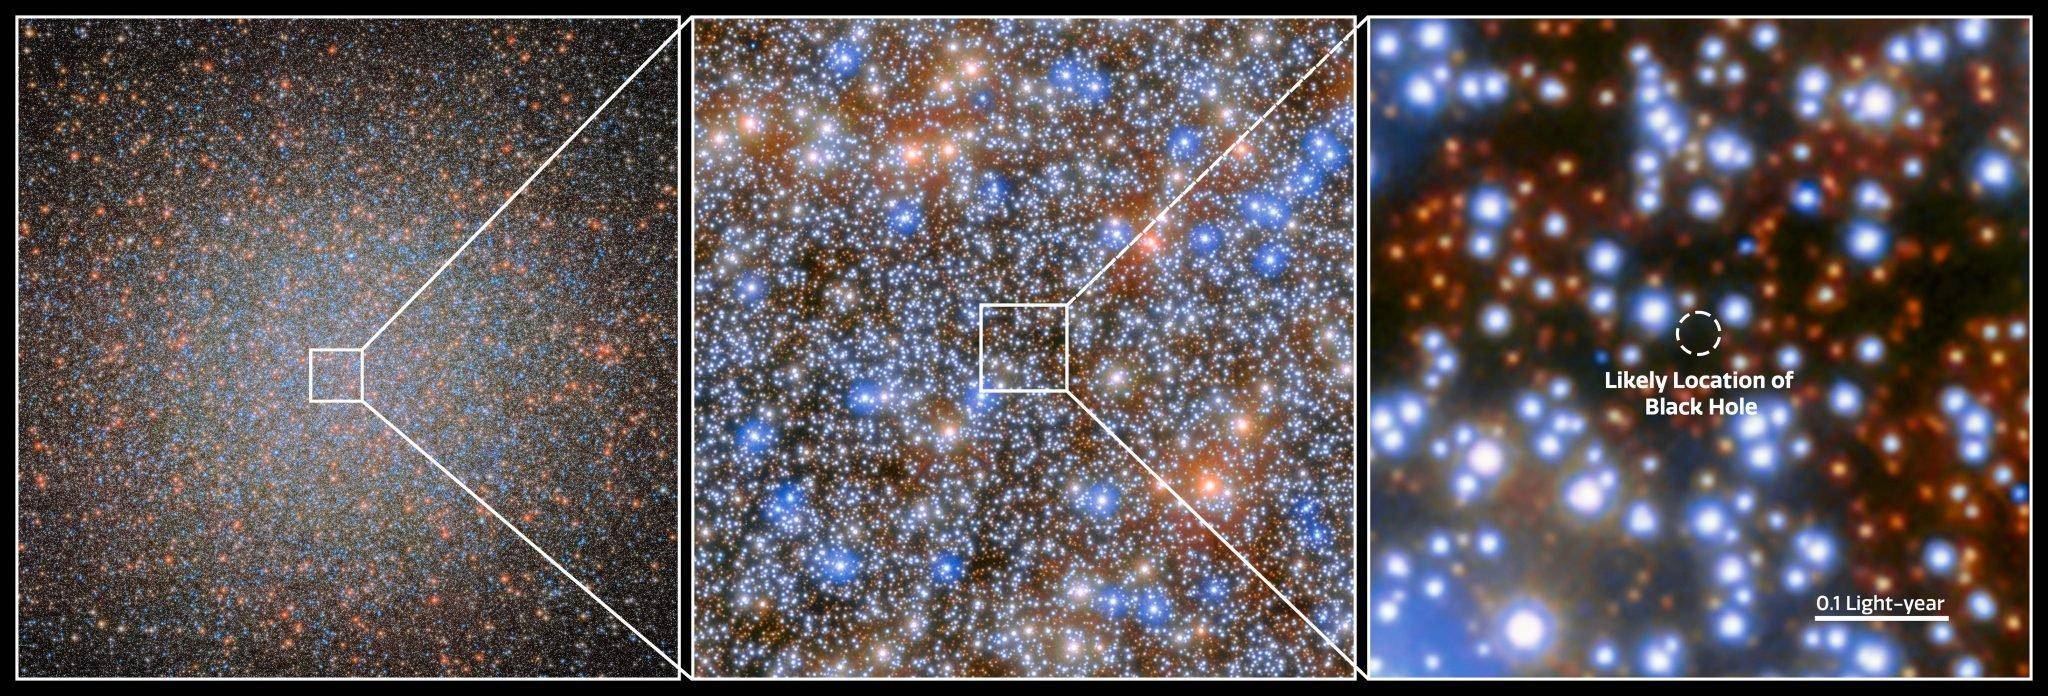 缺失的环节被发现：哈勃望远镜找到了半人马座欧米茄隐藏的黑洞 